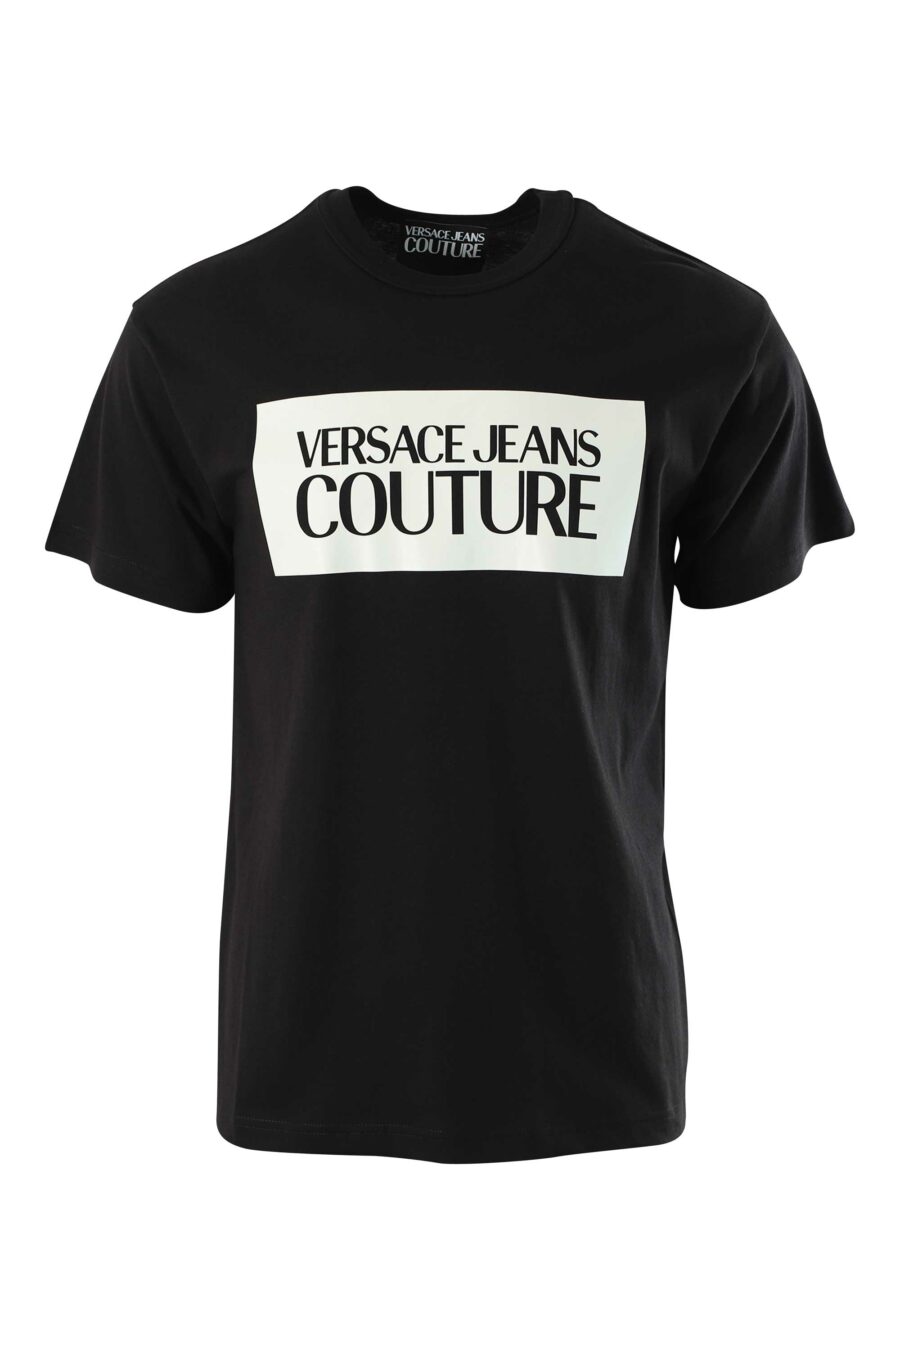 T-shirt preta com maxilogue em contraste - 8052019235449